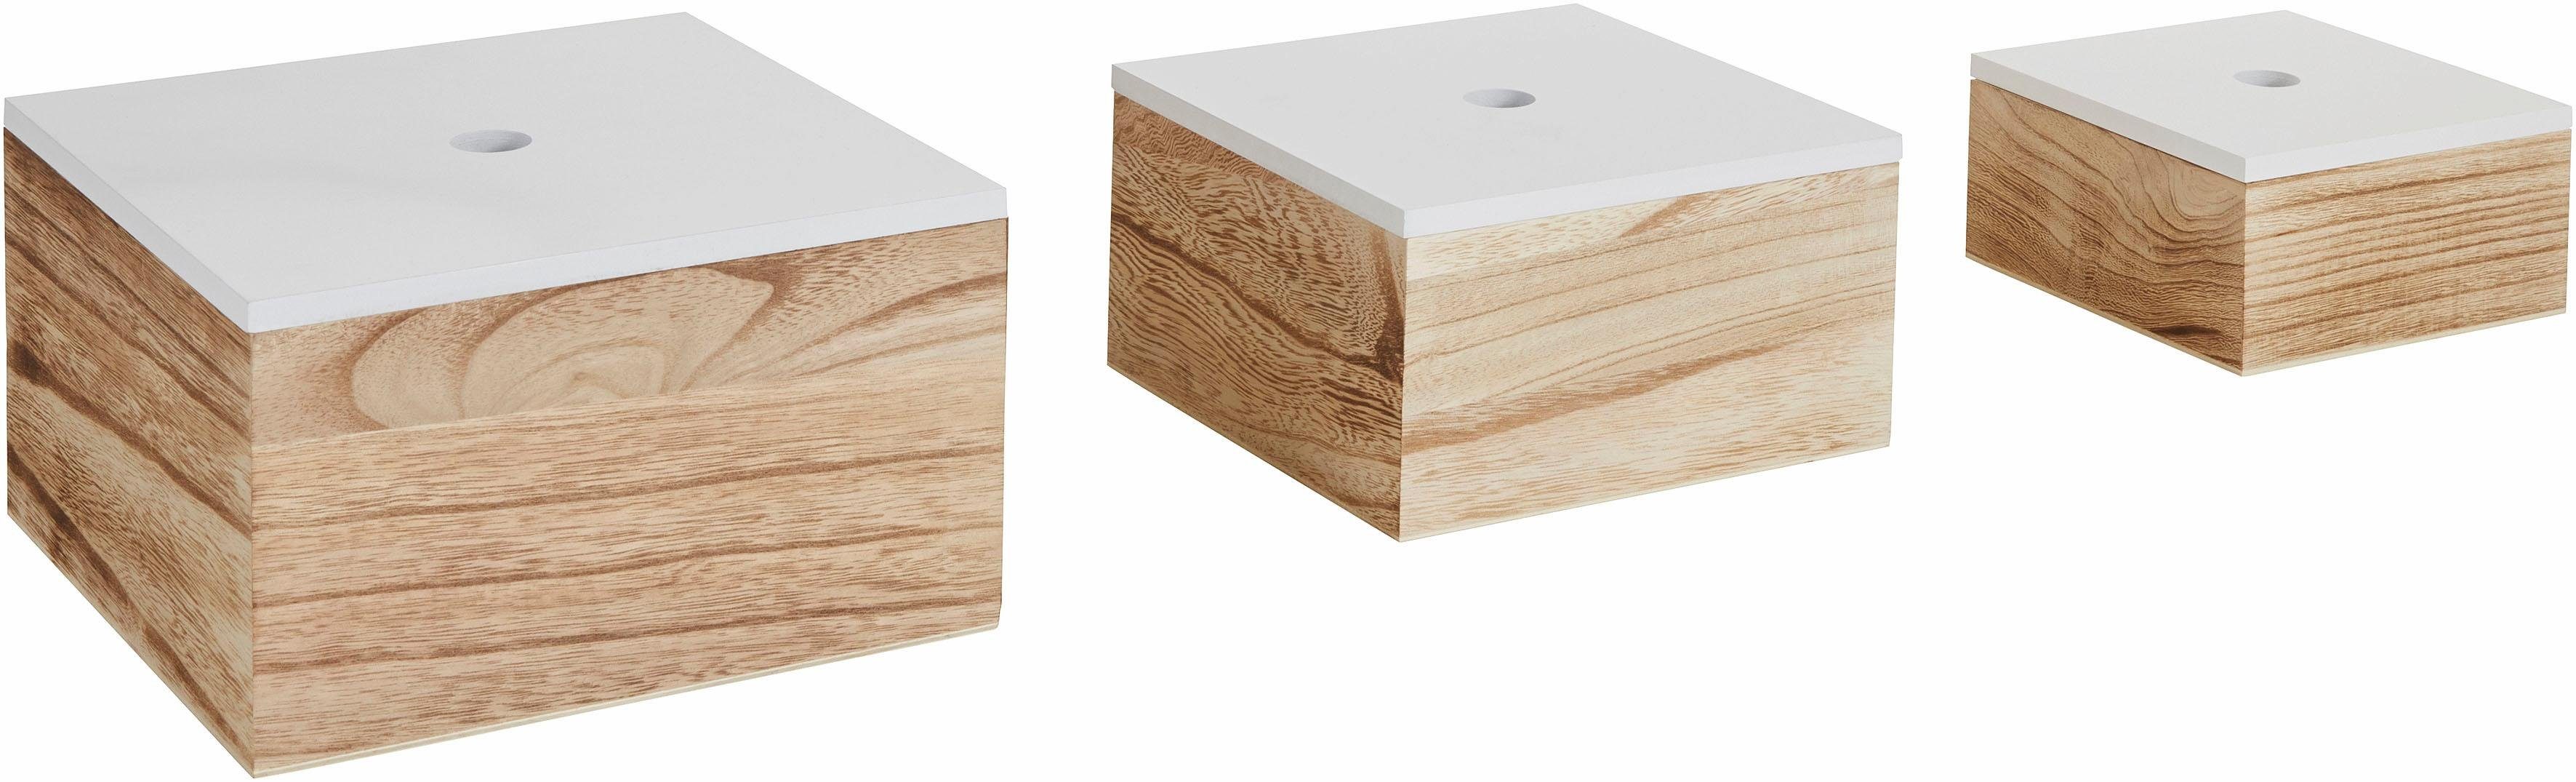 20/20/11,2 (B/T/H): Holz, Present und Zeller Maße Aufbewahrungsbox, 3er cm, cm weiß/natur, cm 16/16/8 24/24/14 Set,